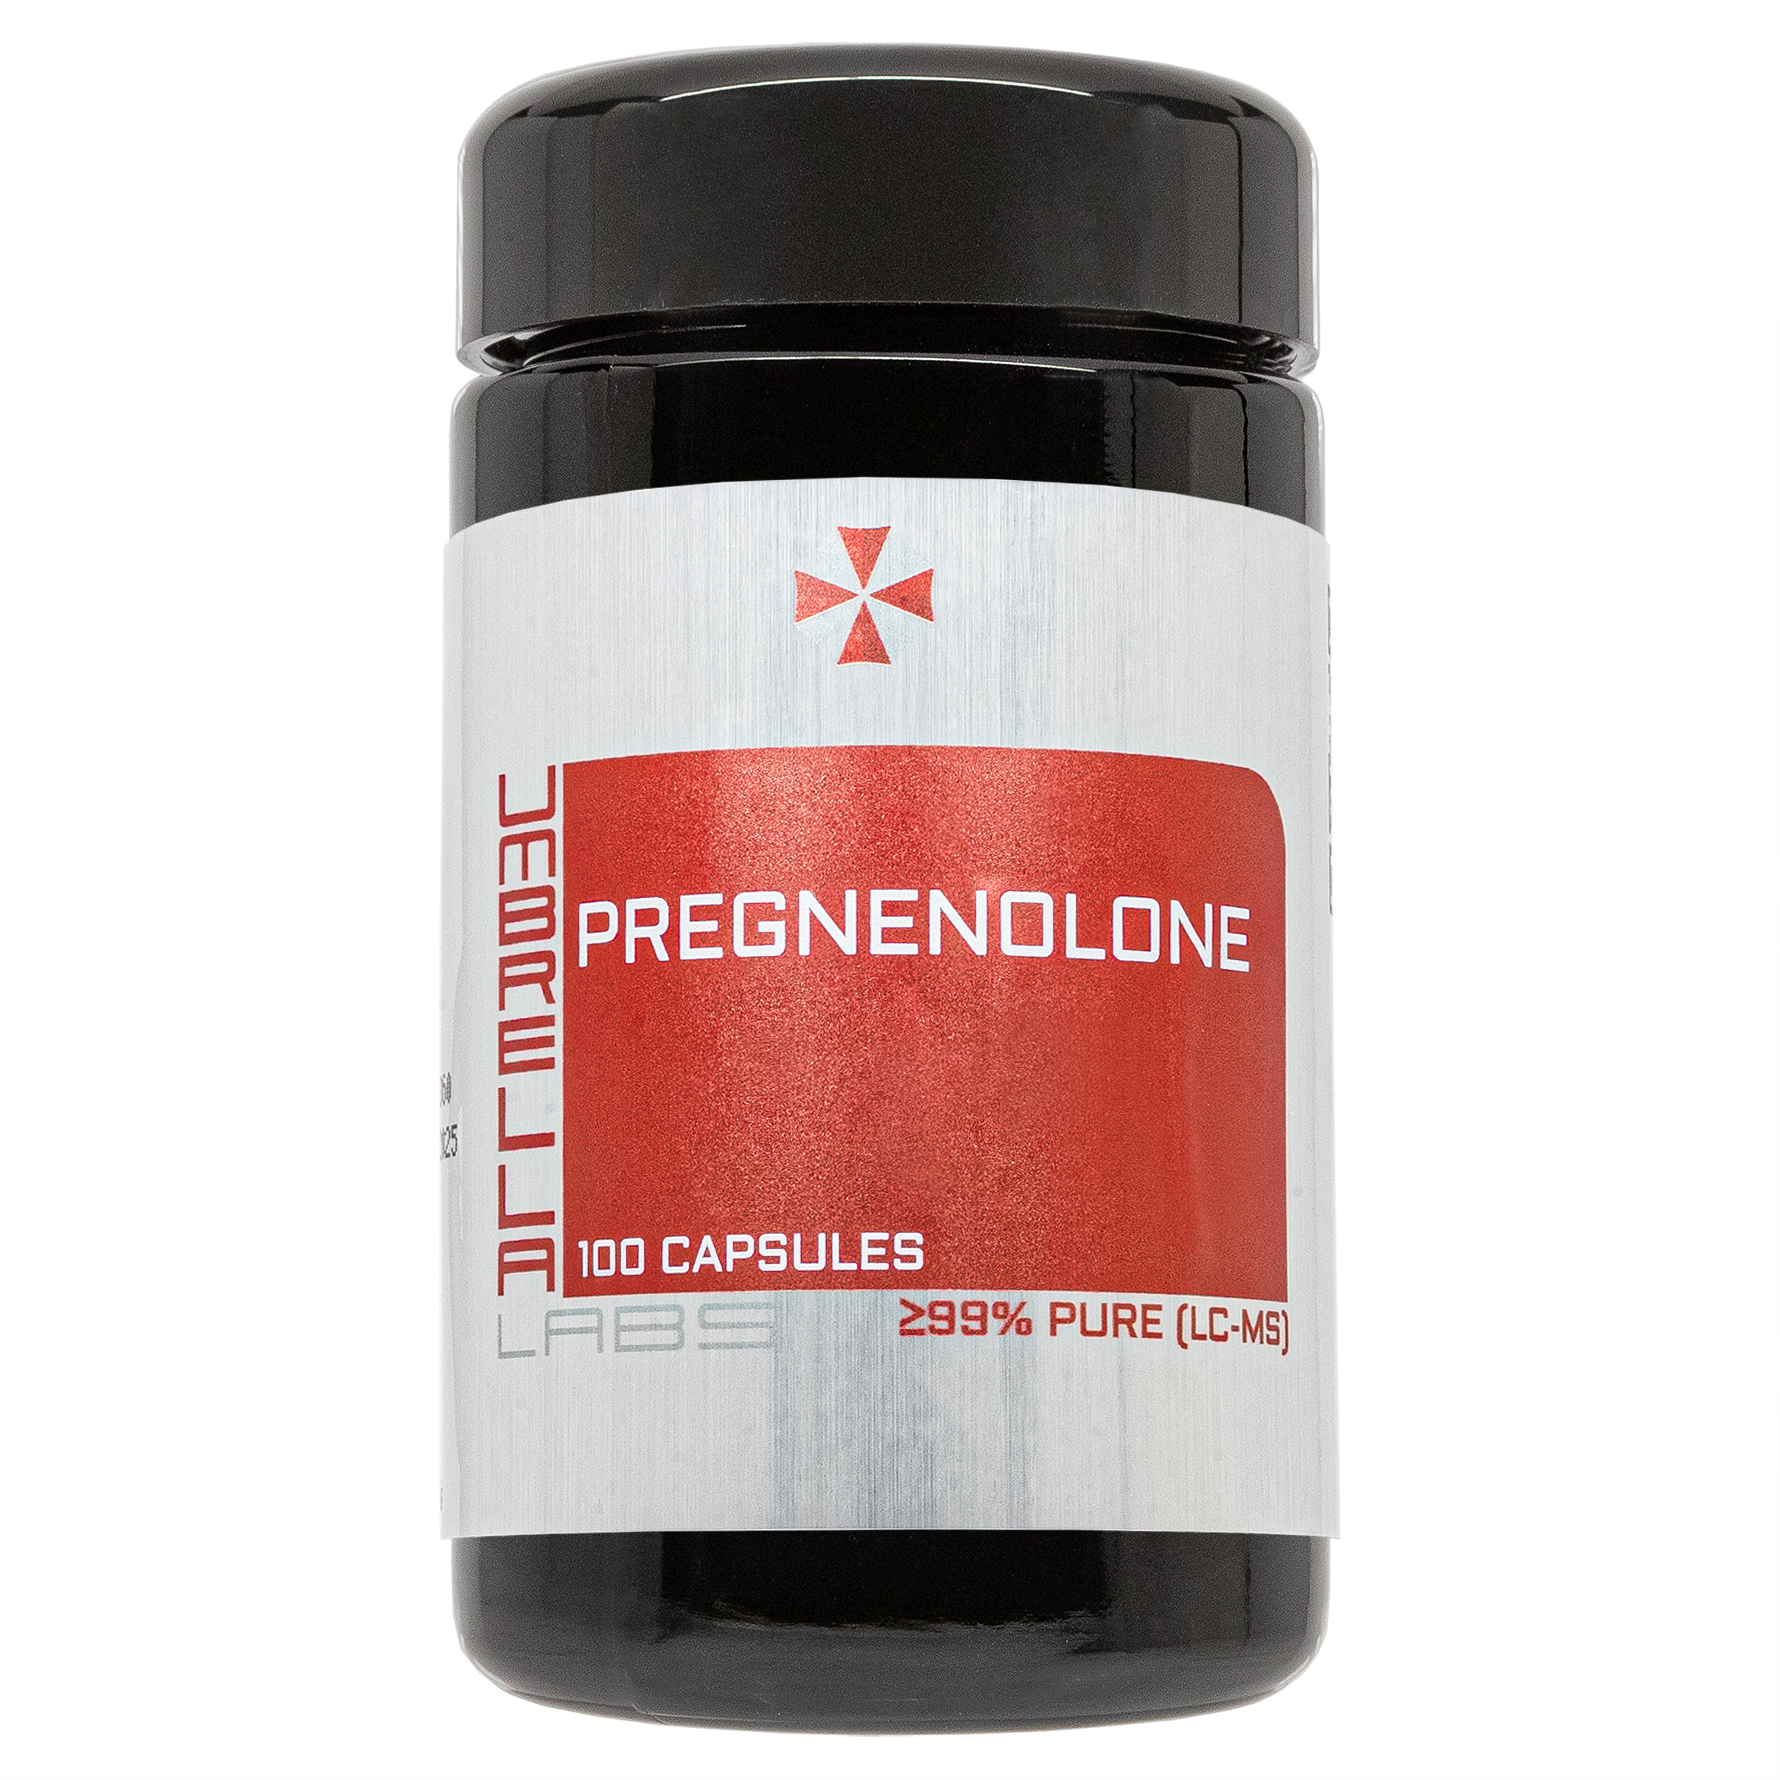 pregnenolone powder (100 capsules)